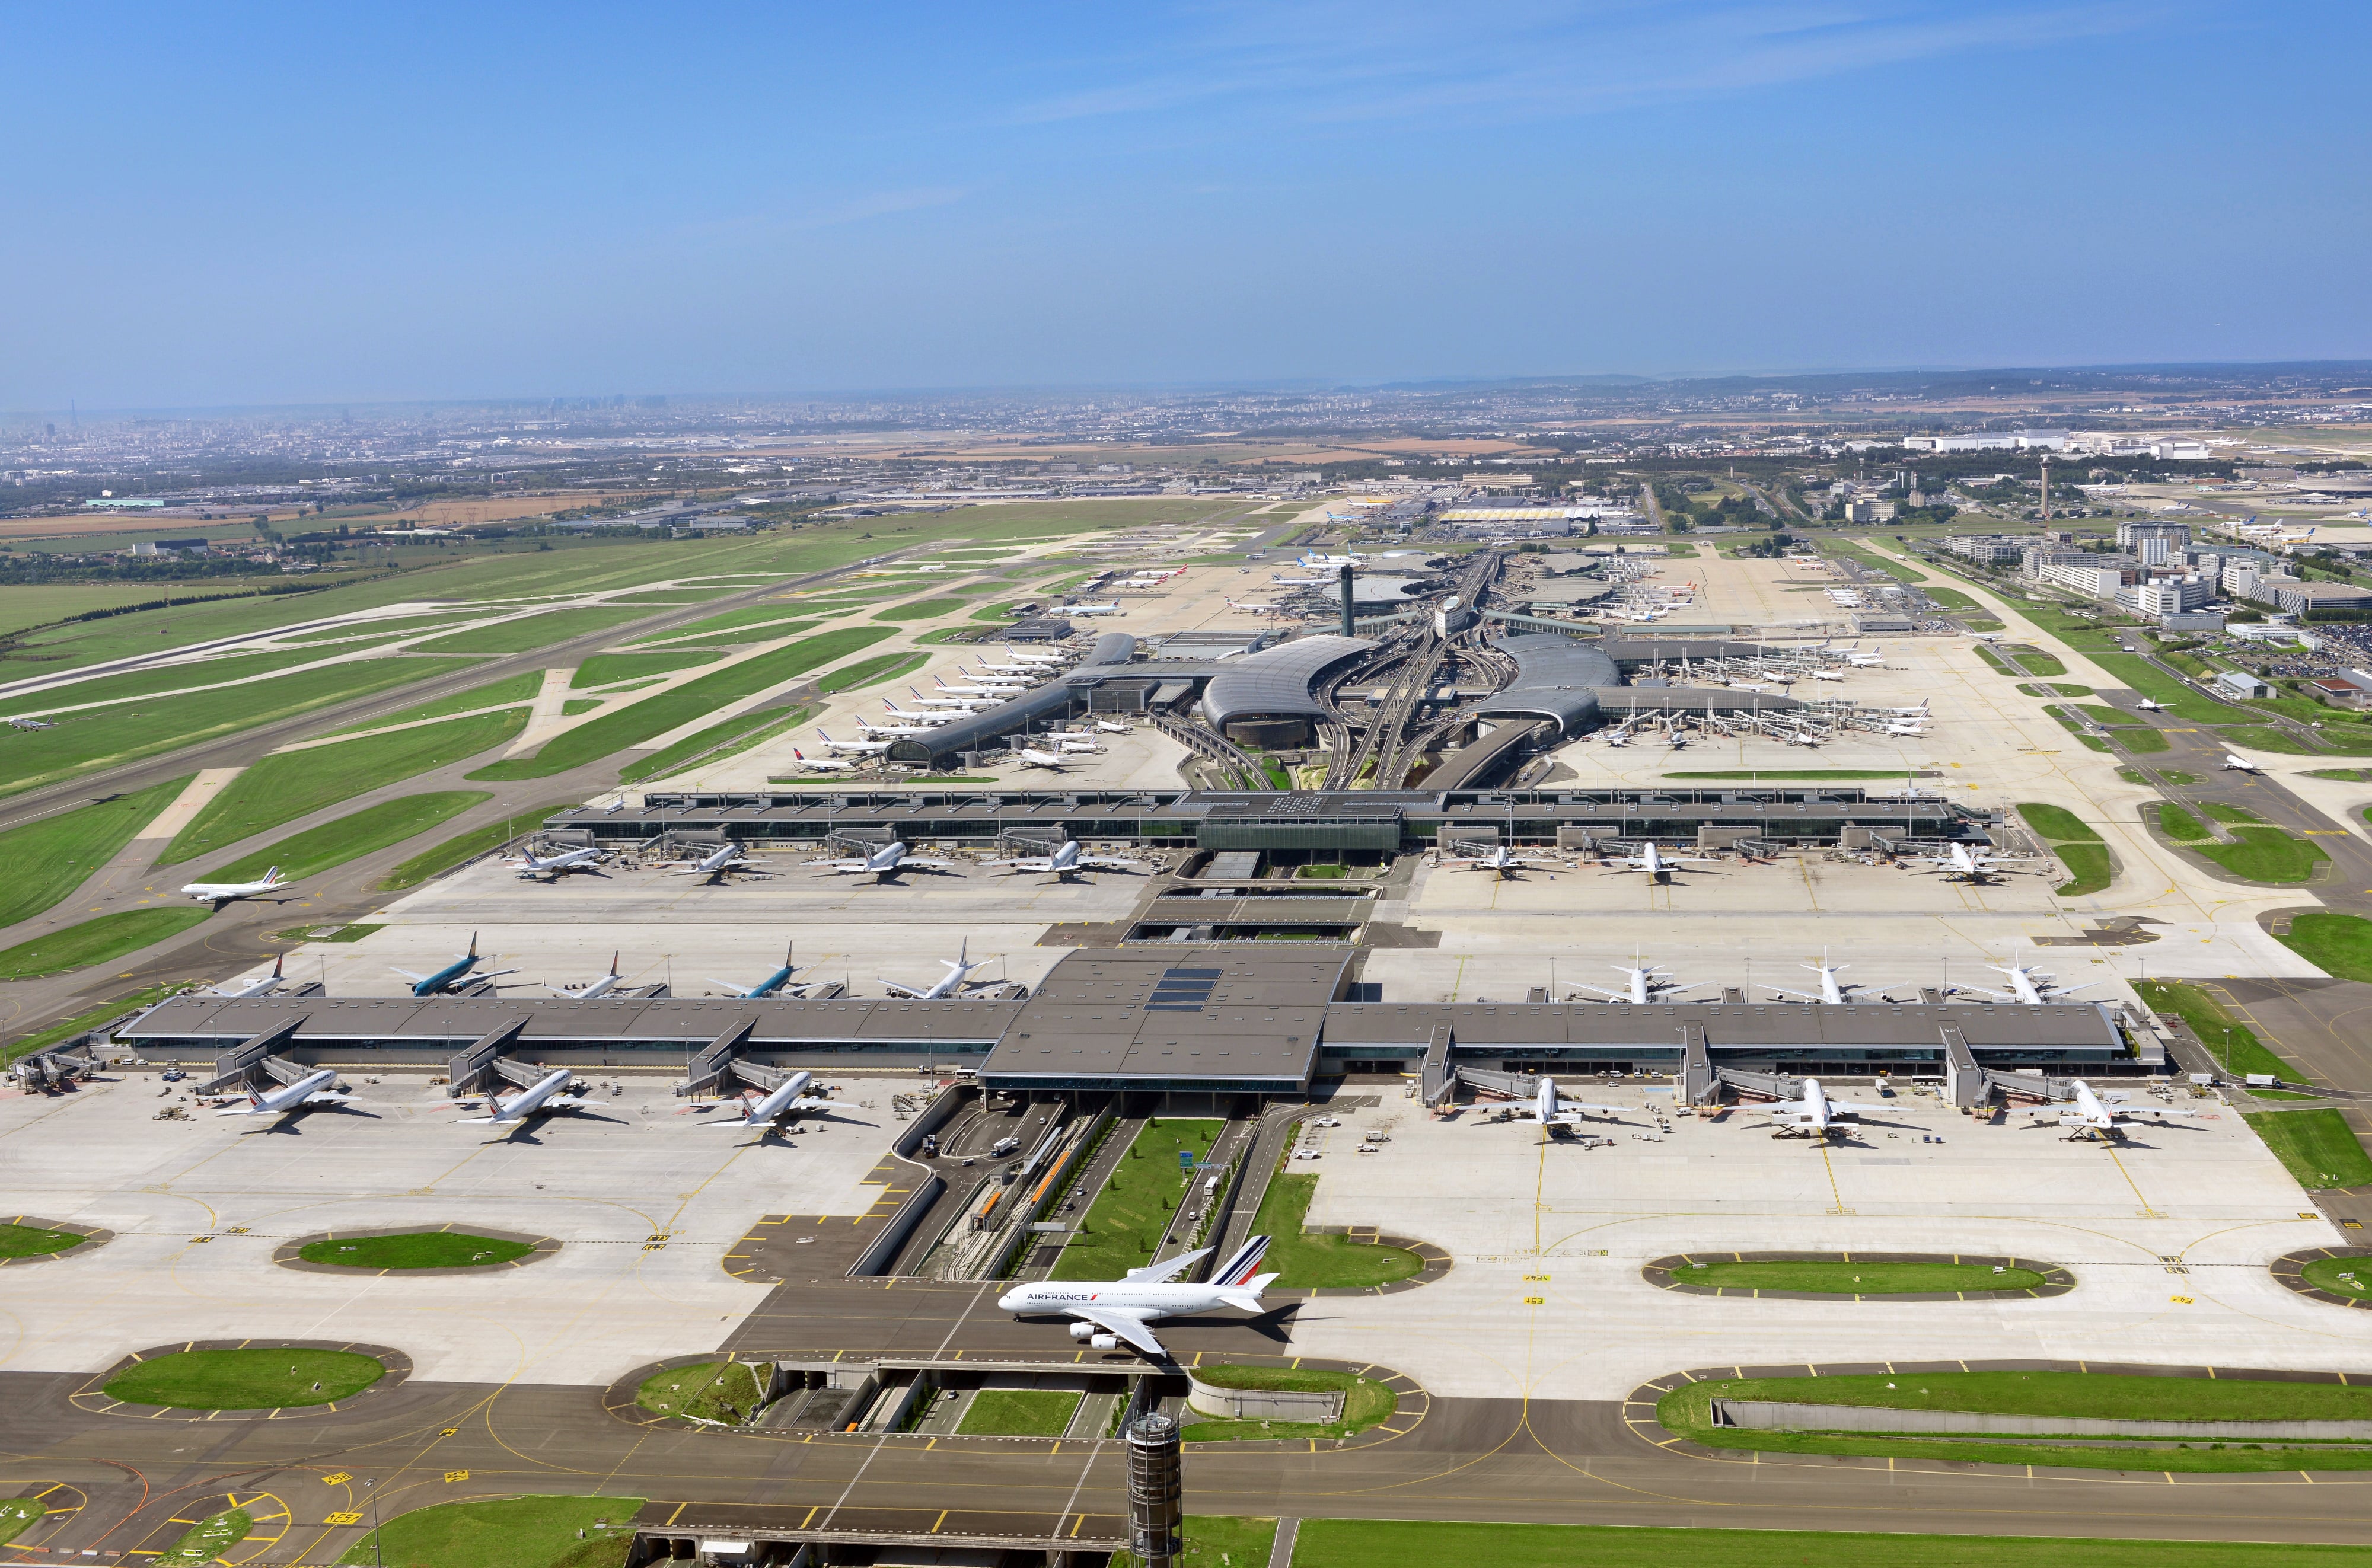 ADP et Vinci Airports accélèrent leur redressement mais restent loin de 2019